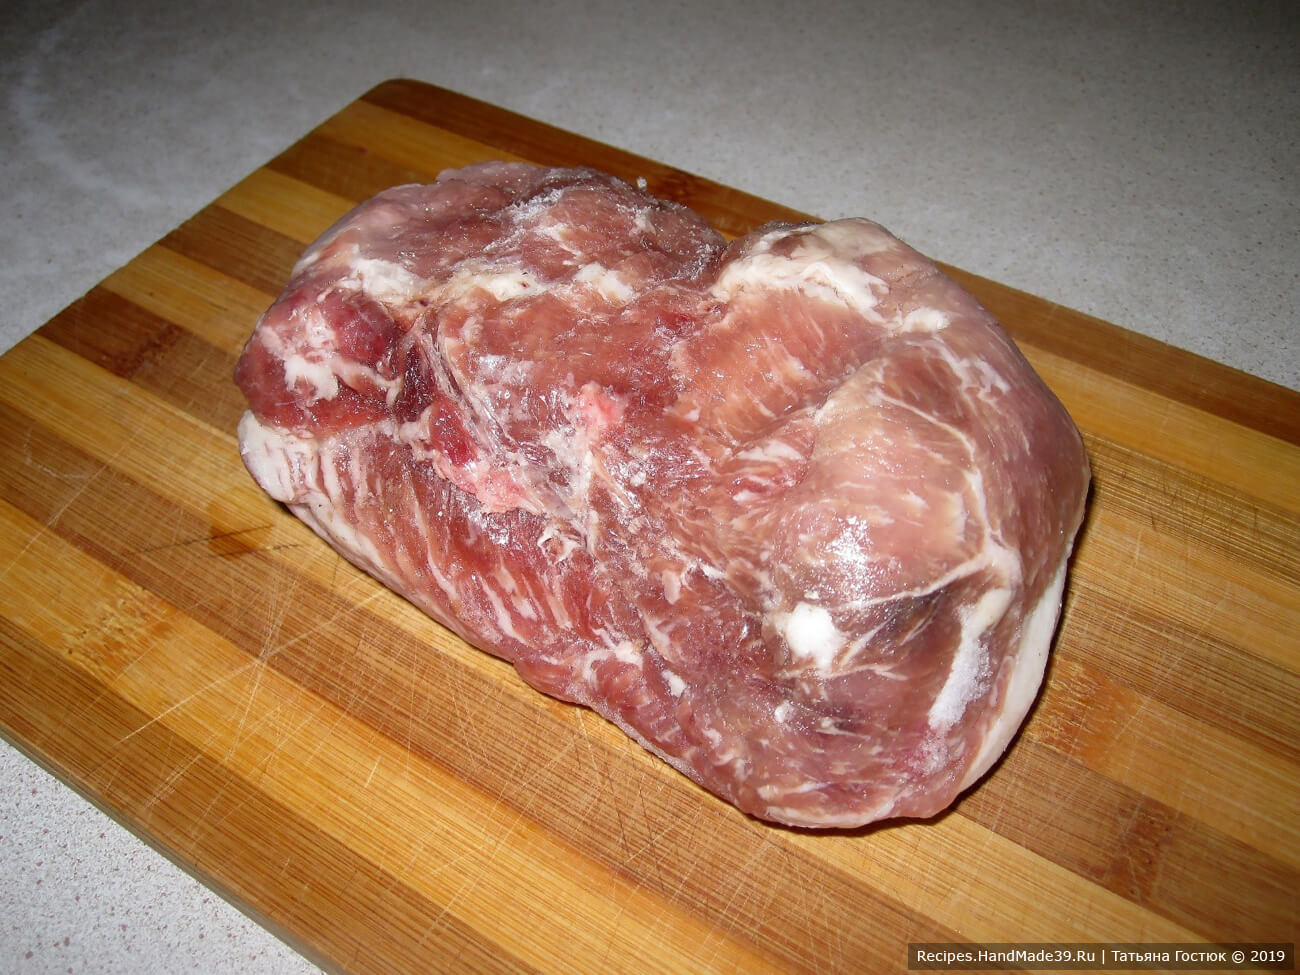 Вот такой кусок свиного филе я использовала для приготовления классических отбивных из свинины. Мясо надо промыть и обсушить бумажным полотенцем